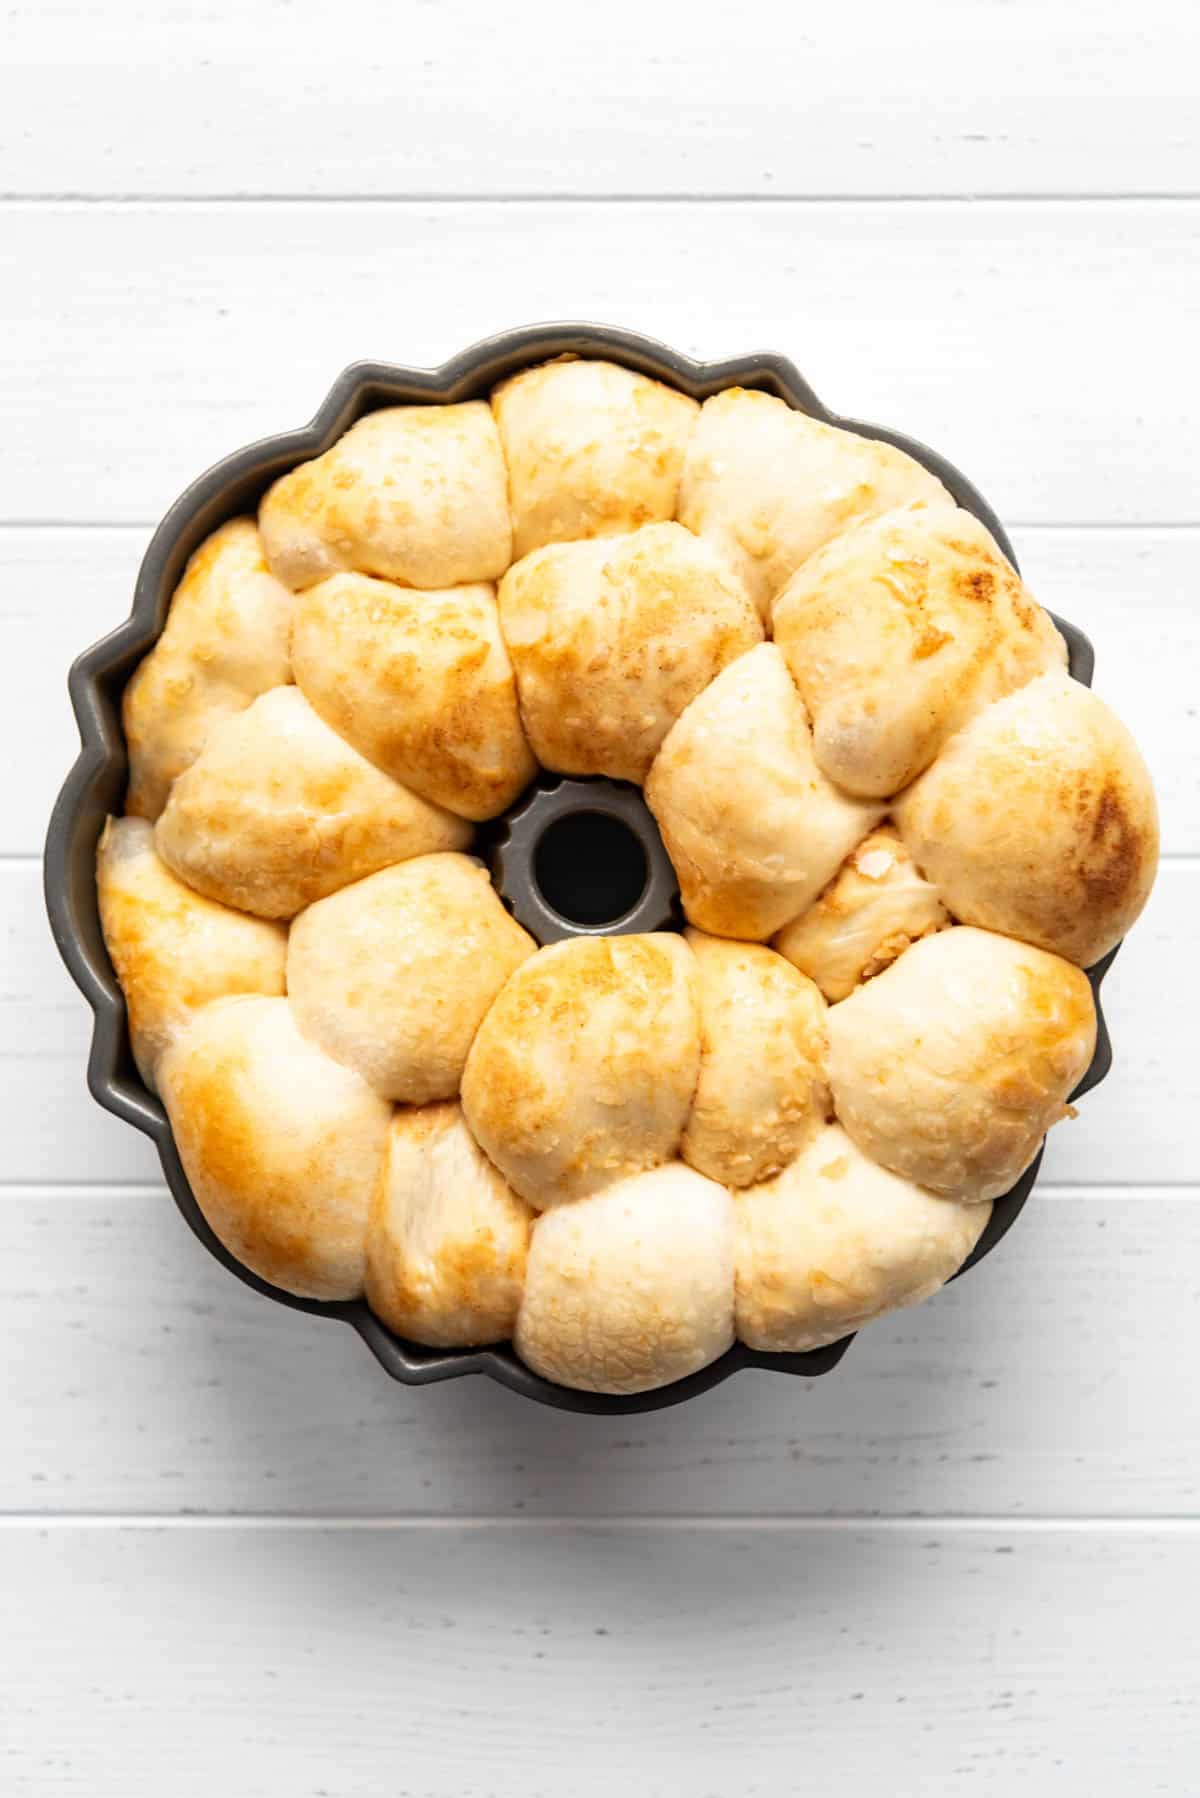 Puffy risen monkey bread in a bundt pan.